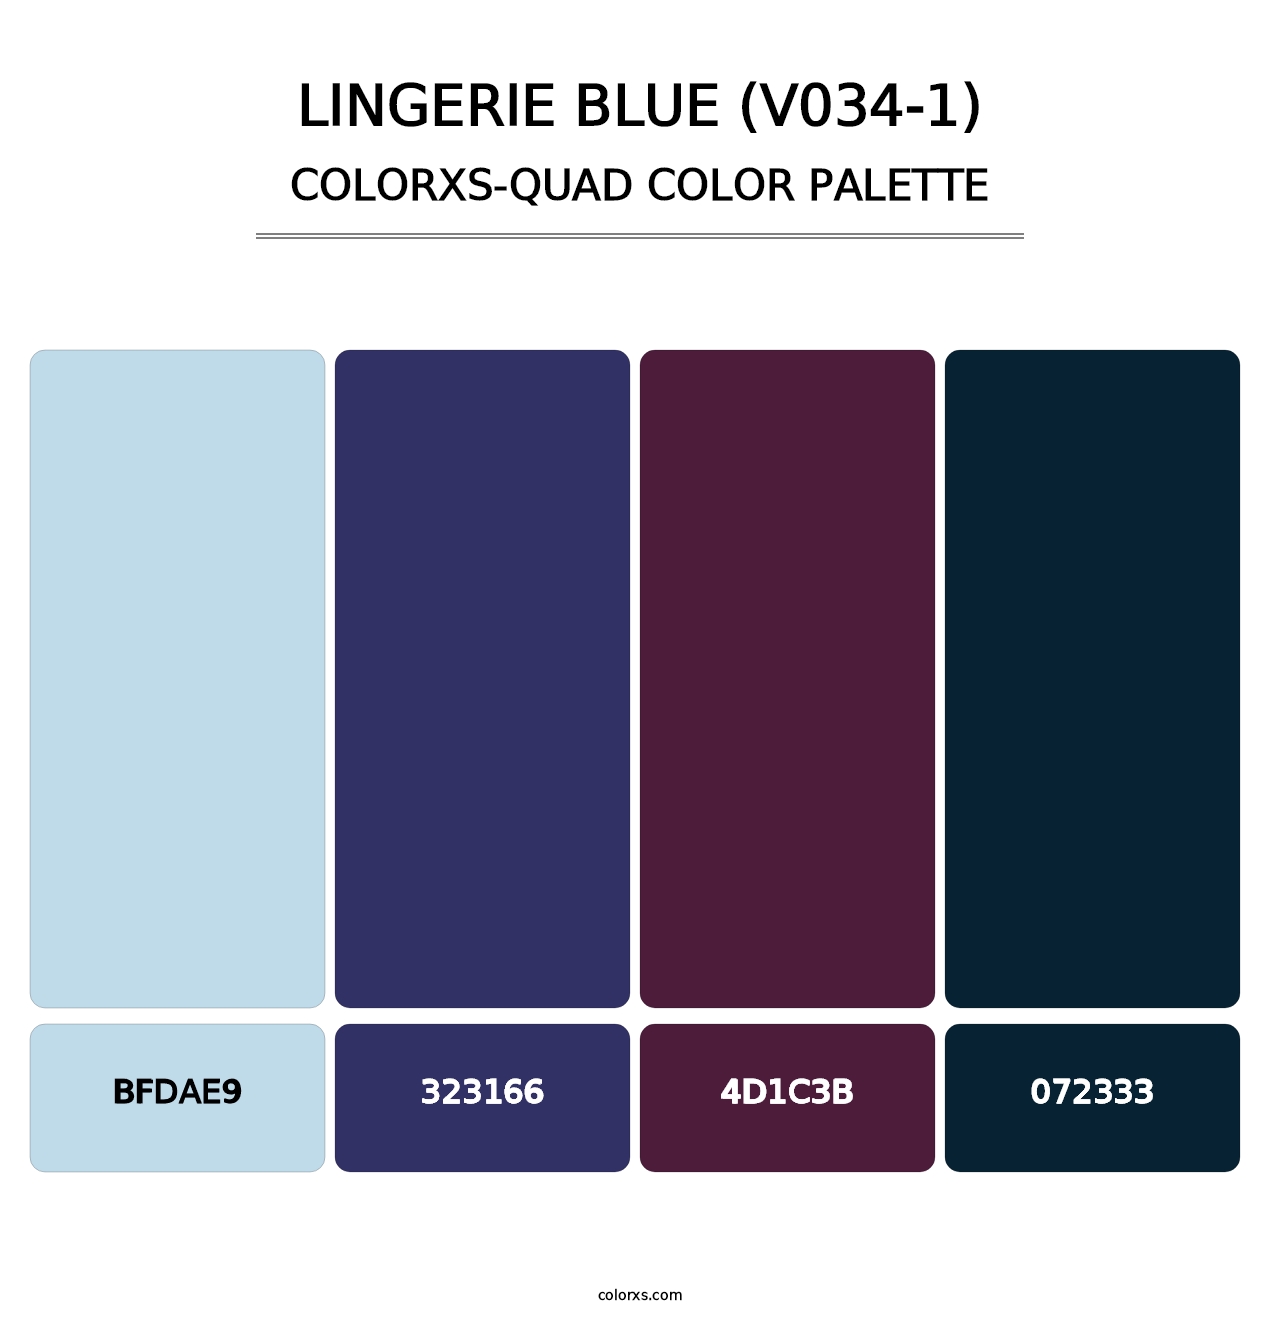 Lingerie Blue (V034-1) - Colorxs Quad Palette